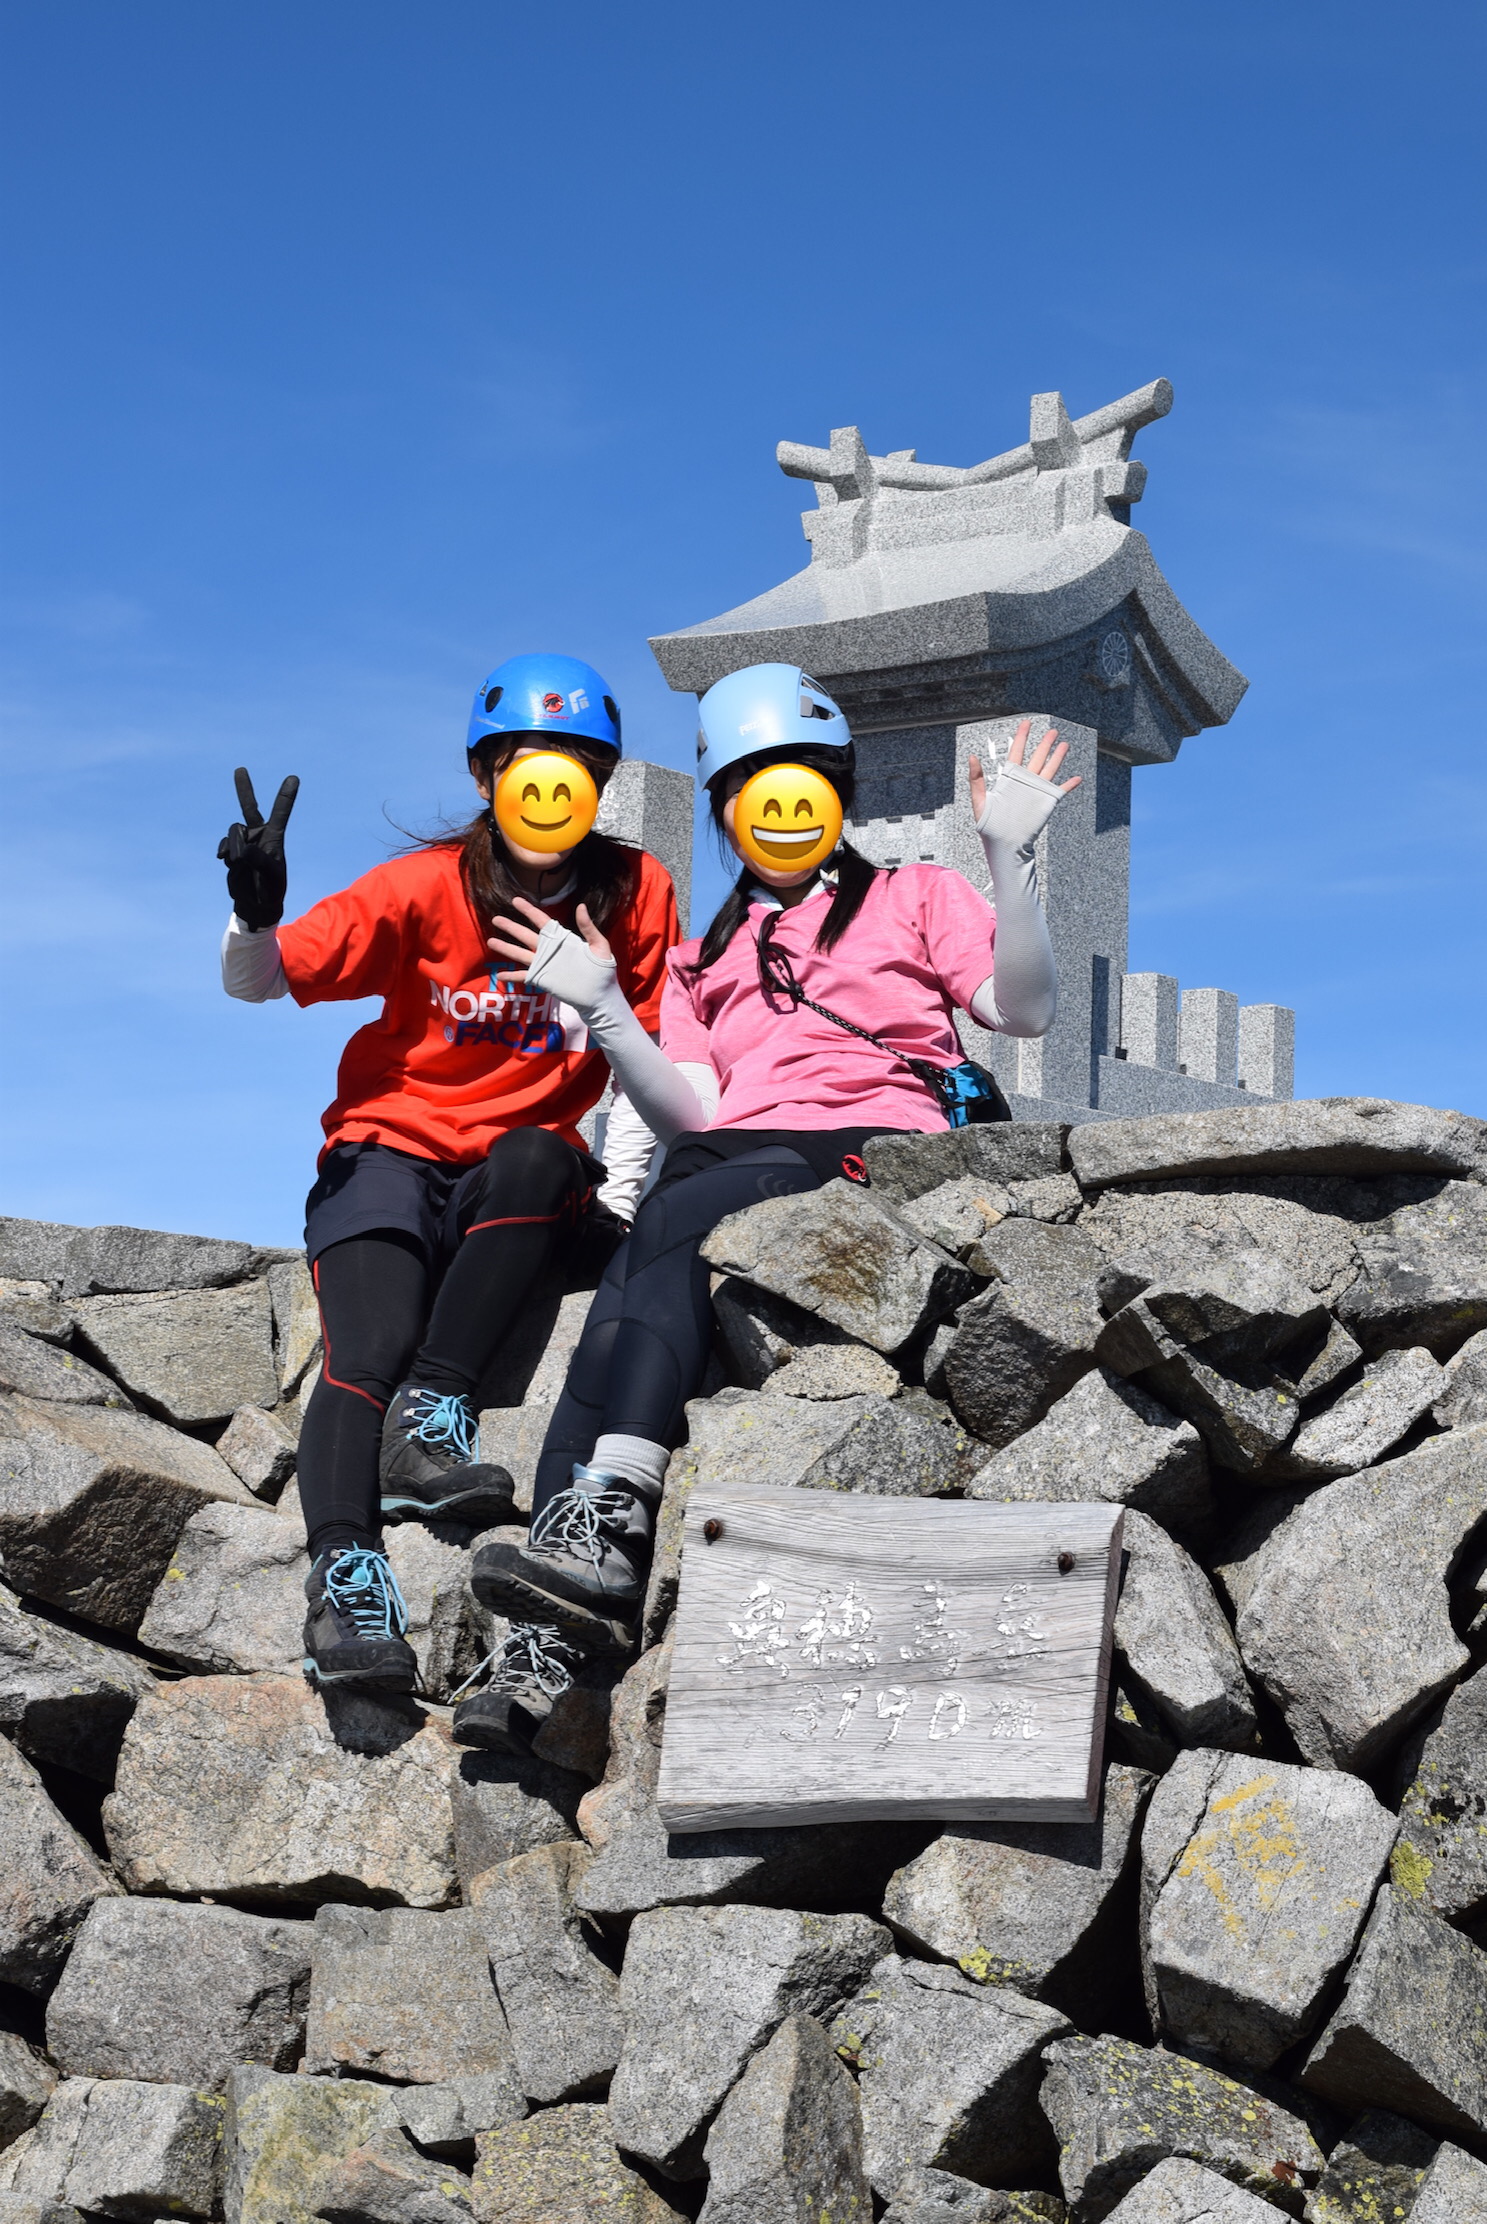 奥穂高岳山頂で記念写真を撮っている写真